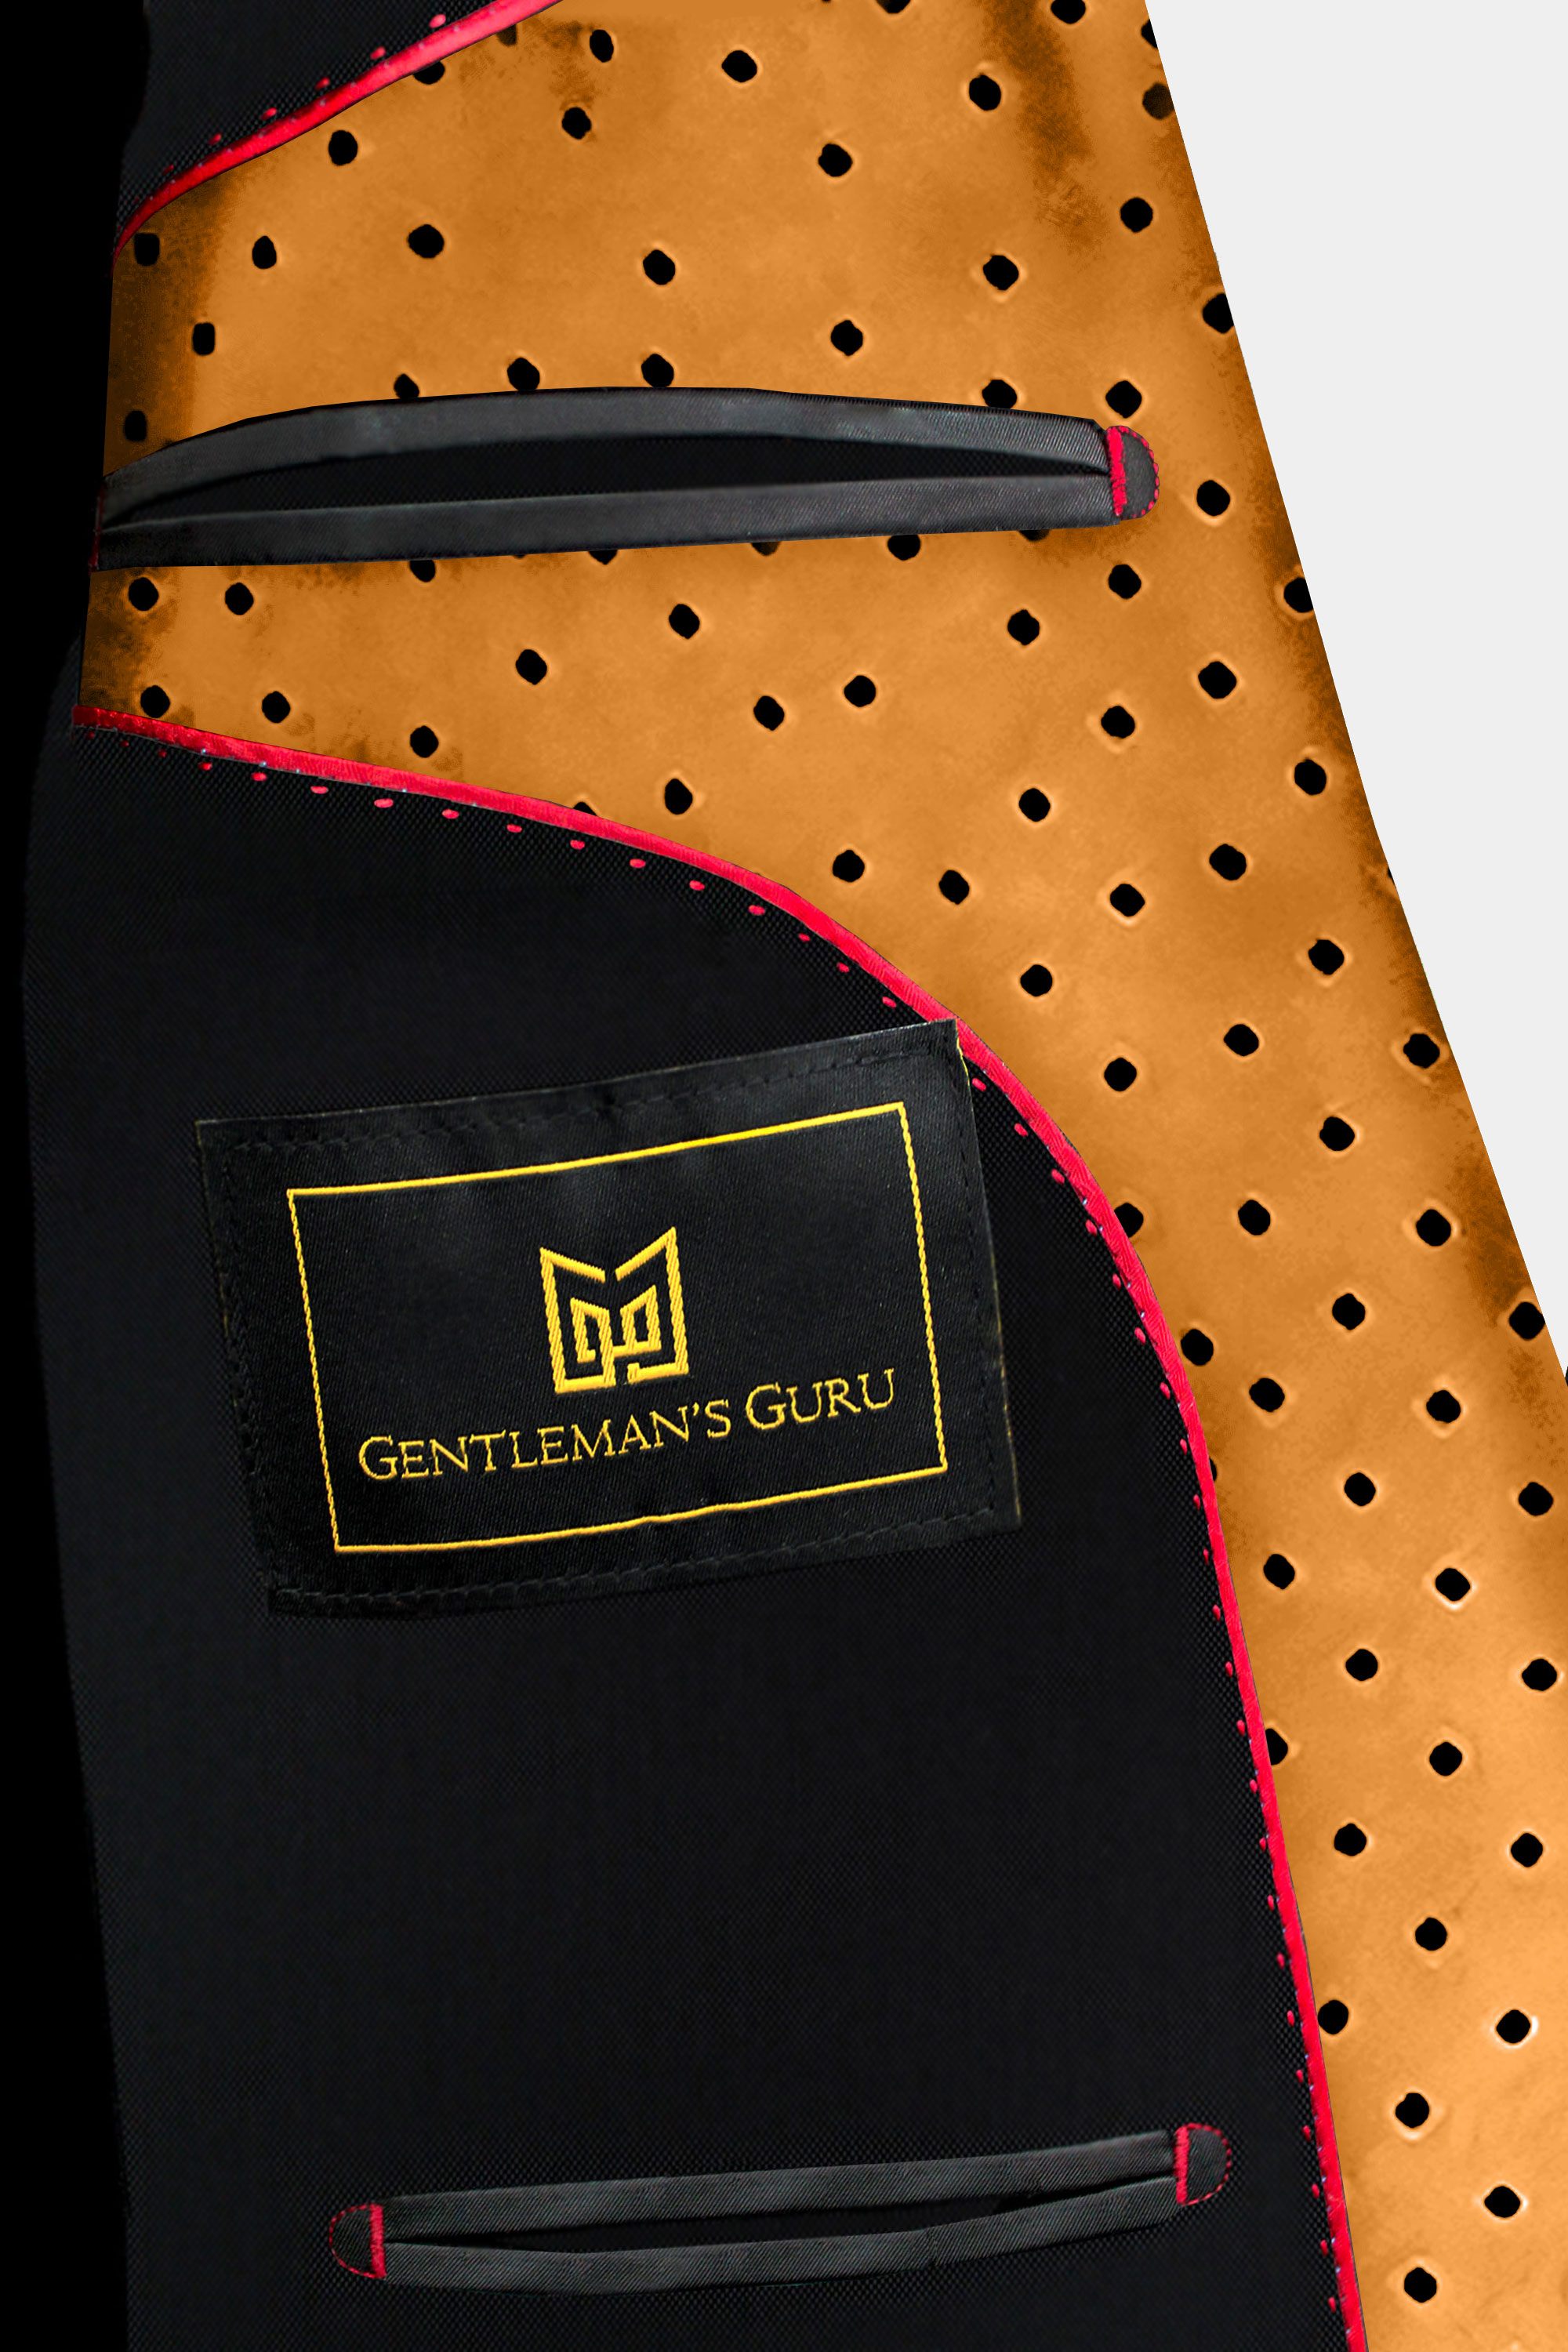 Inside-Polka-Dot-Suit-Jacket-from-Gentlemansguru.com